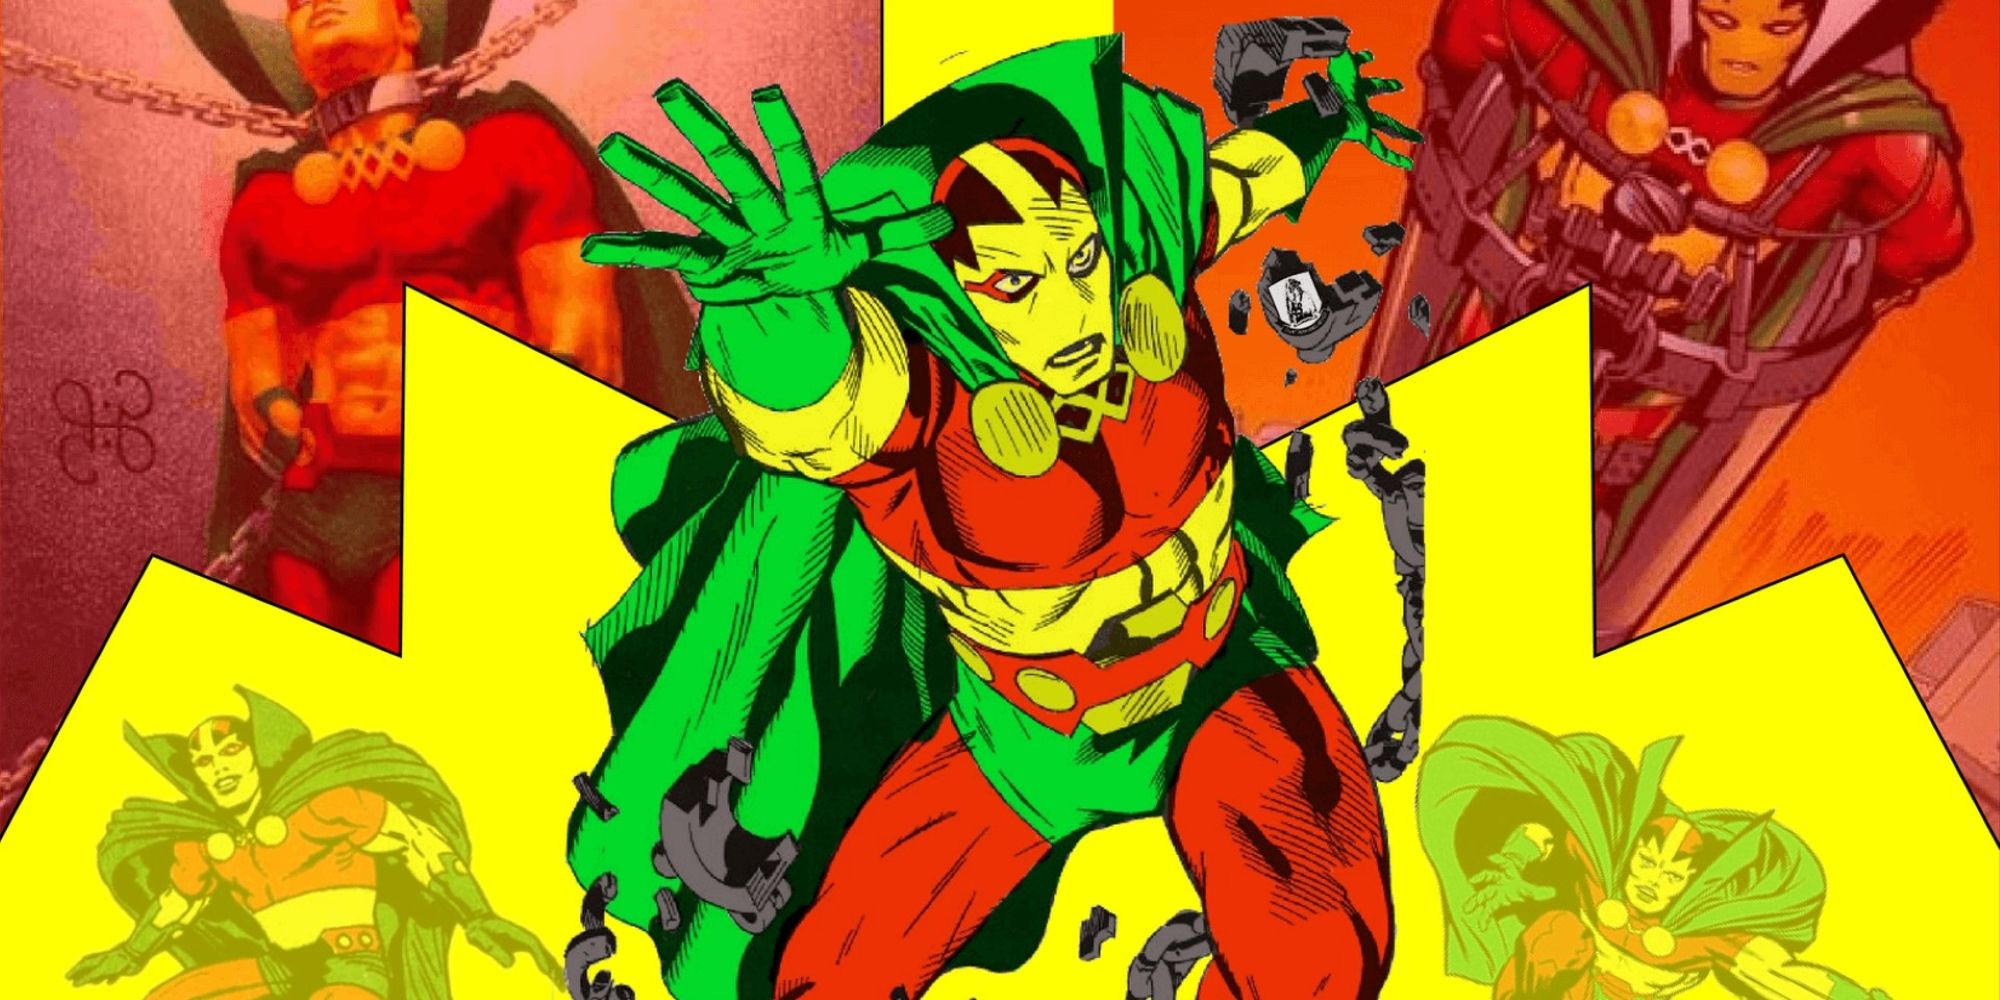 ミスターミラクル DC コミックのさまざまなイテレーションの分割画像